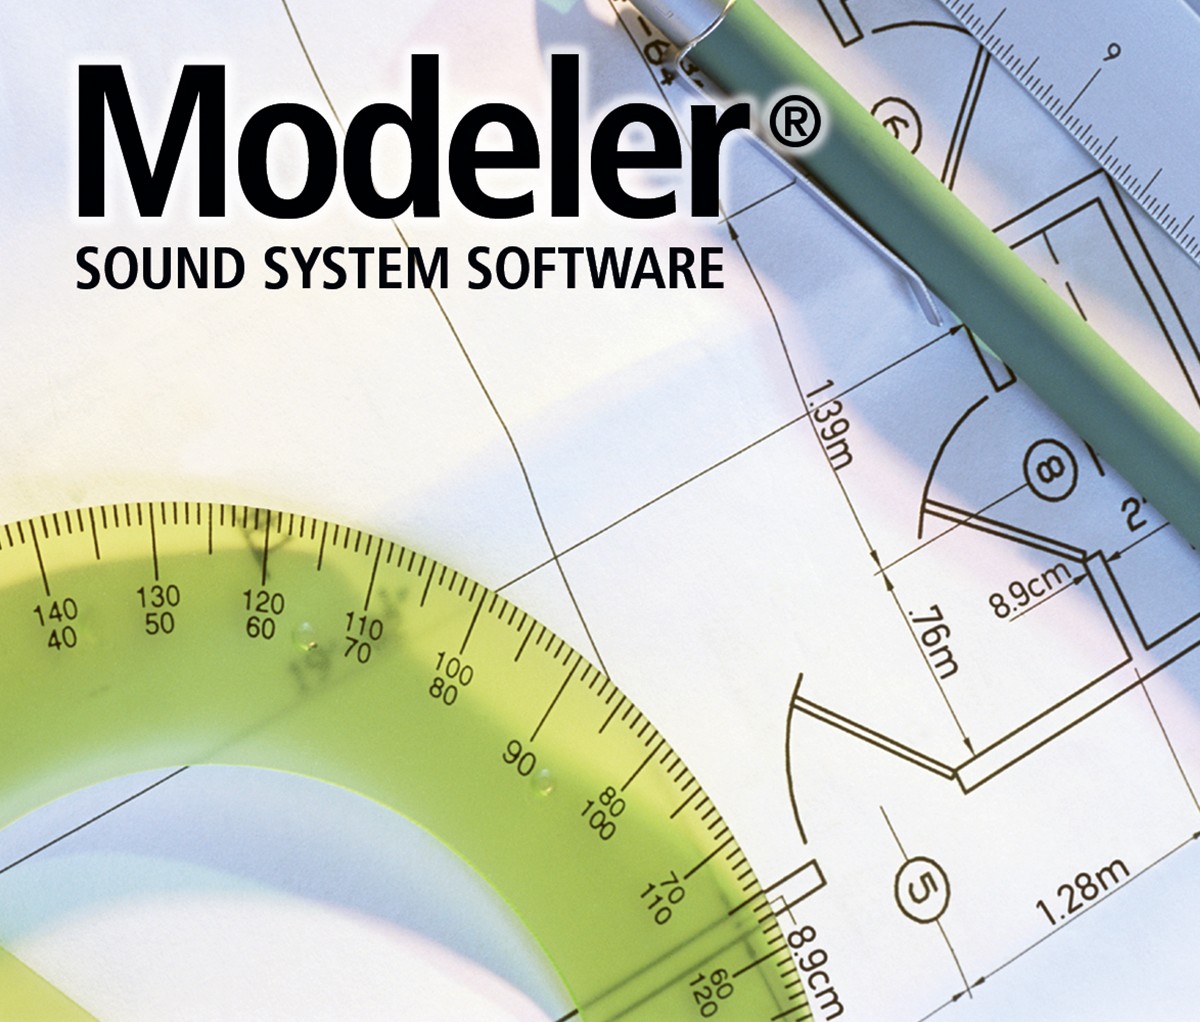 Modeler® Sound System Software